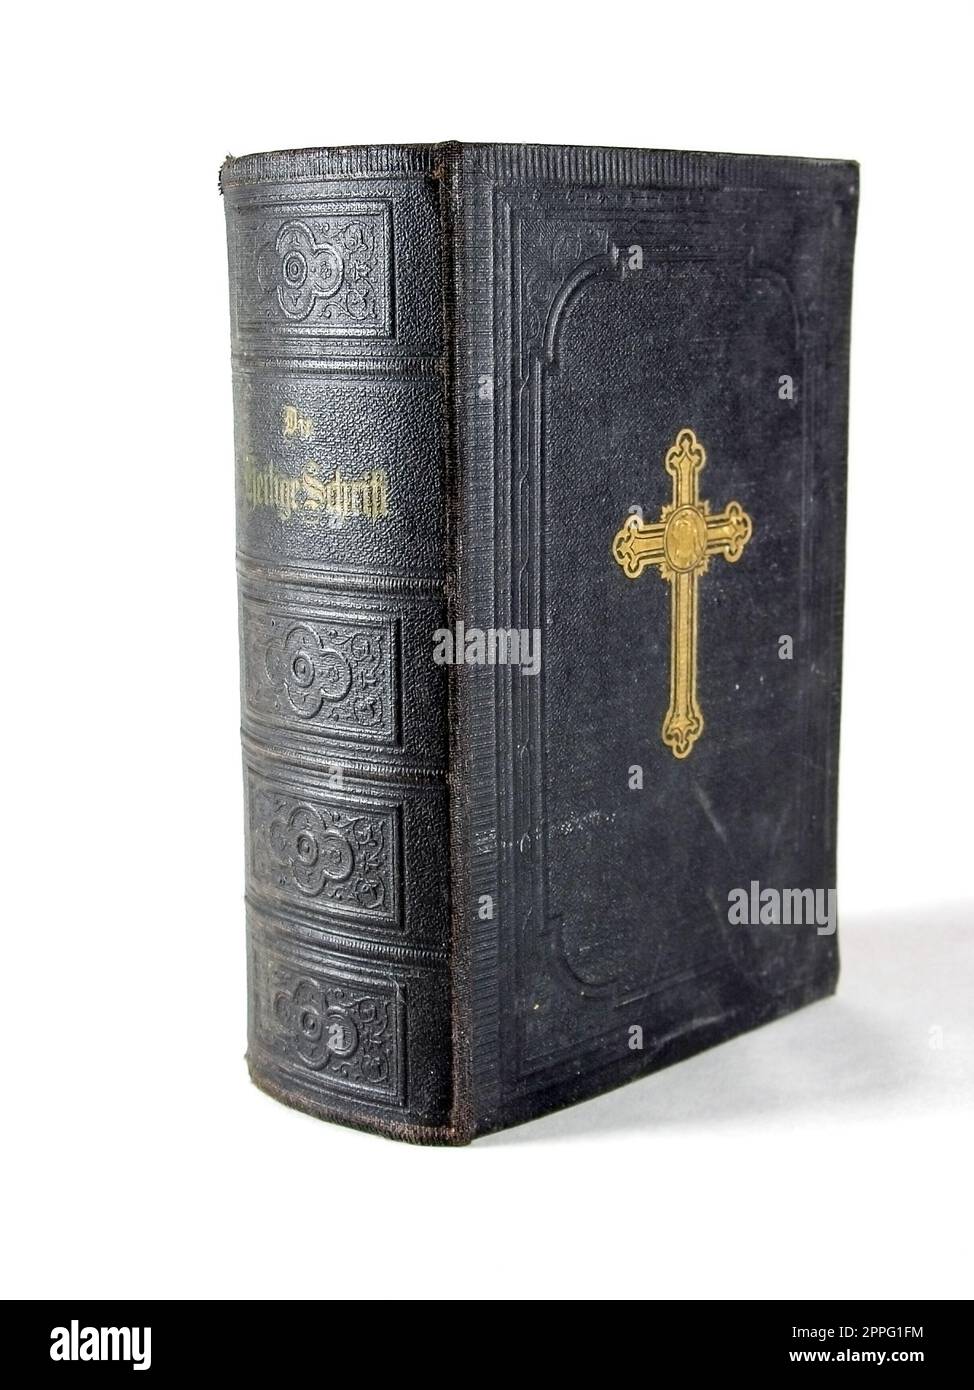 Vida quieto y primeros planos de libros viejos, libros de la biblia santa y de himnos Foto de stock